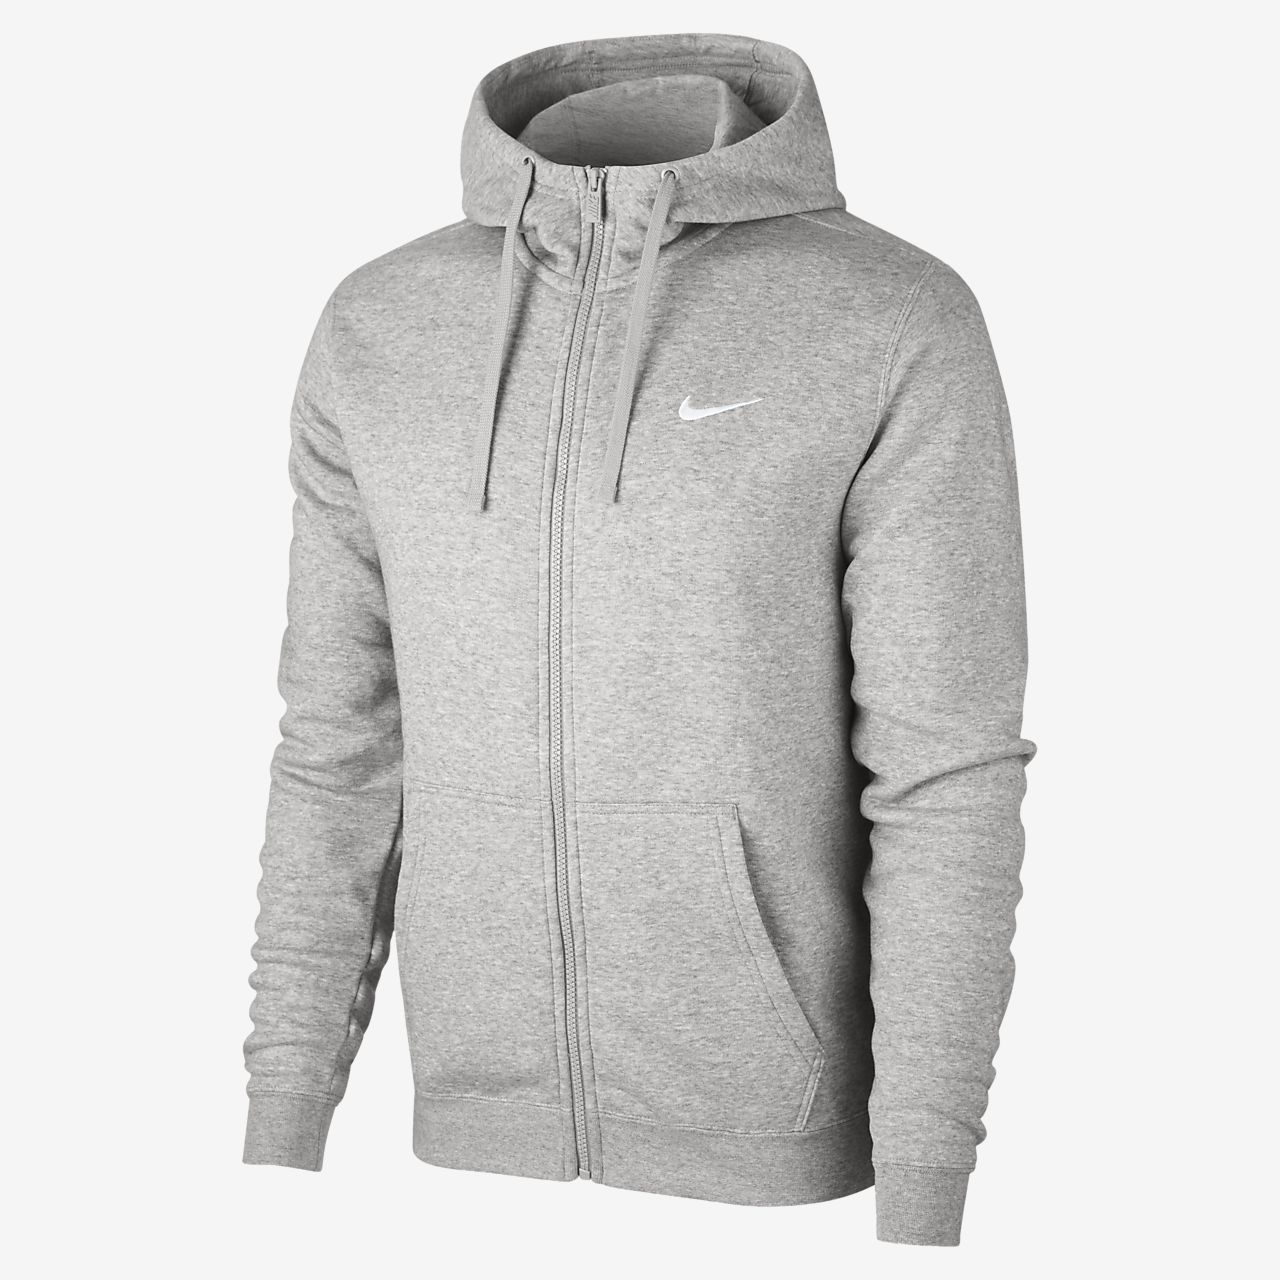 nike grey zip hoodie